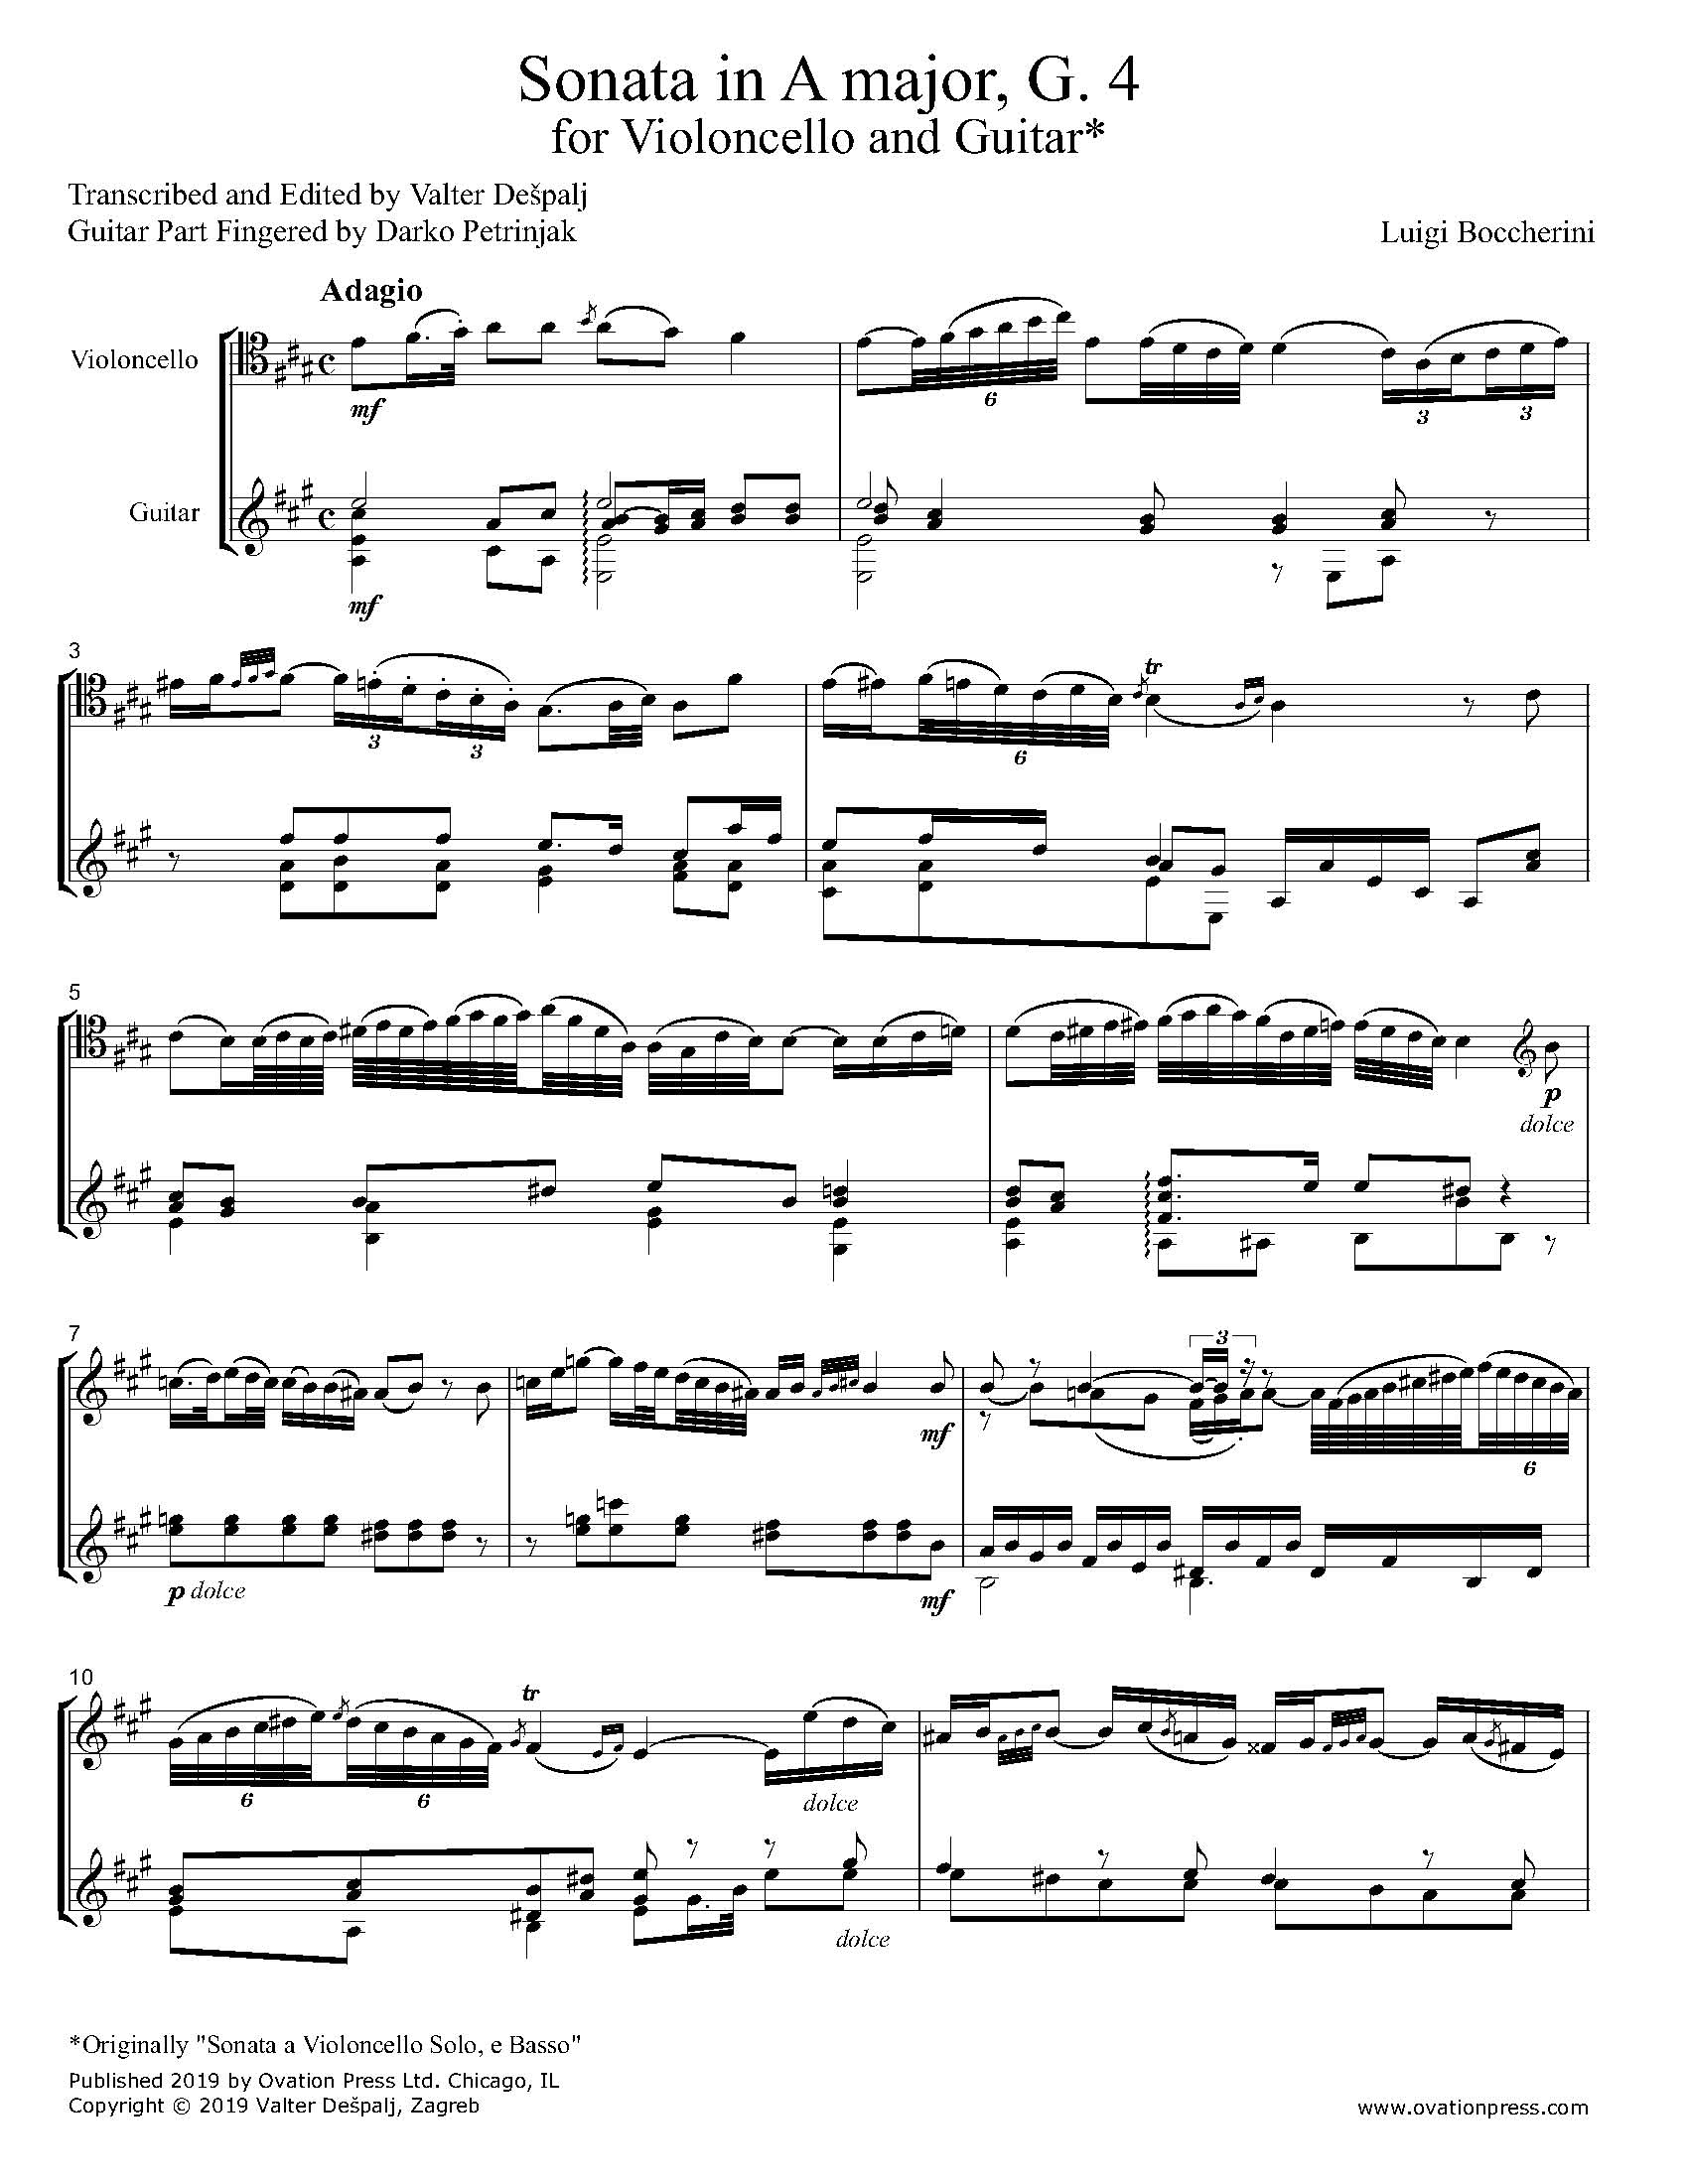 Boccherini Sonata in A Major G. 4 for Cello and Guitar